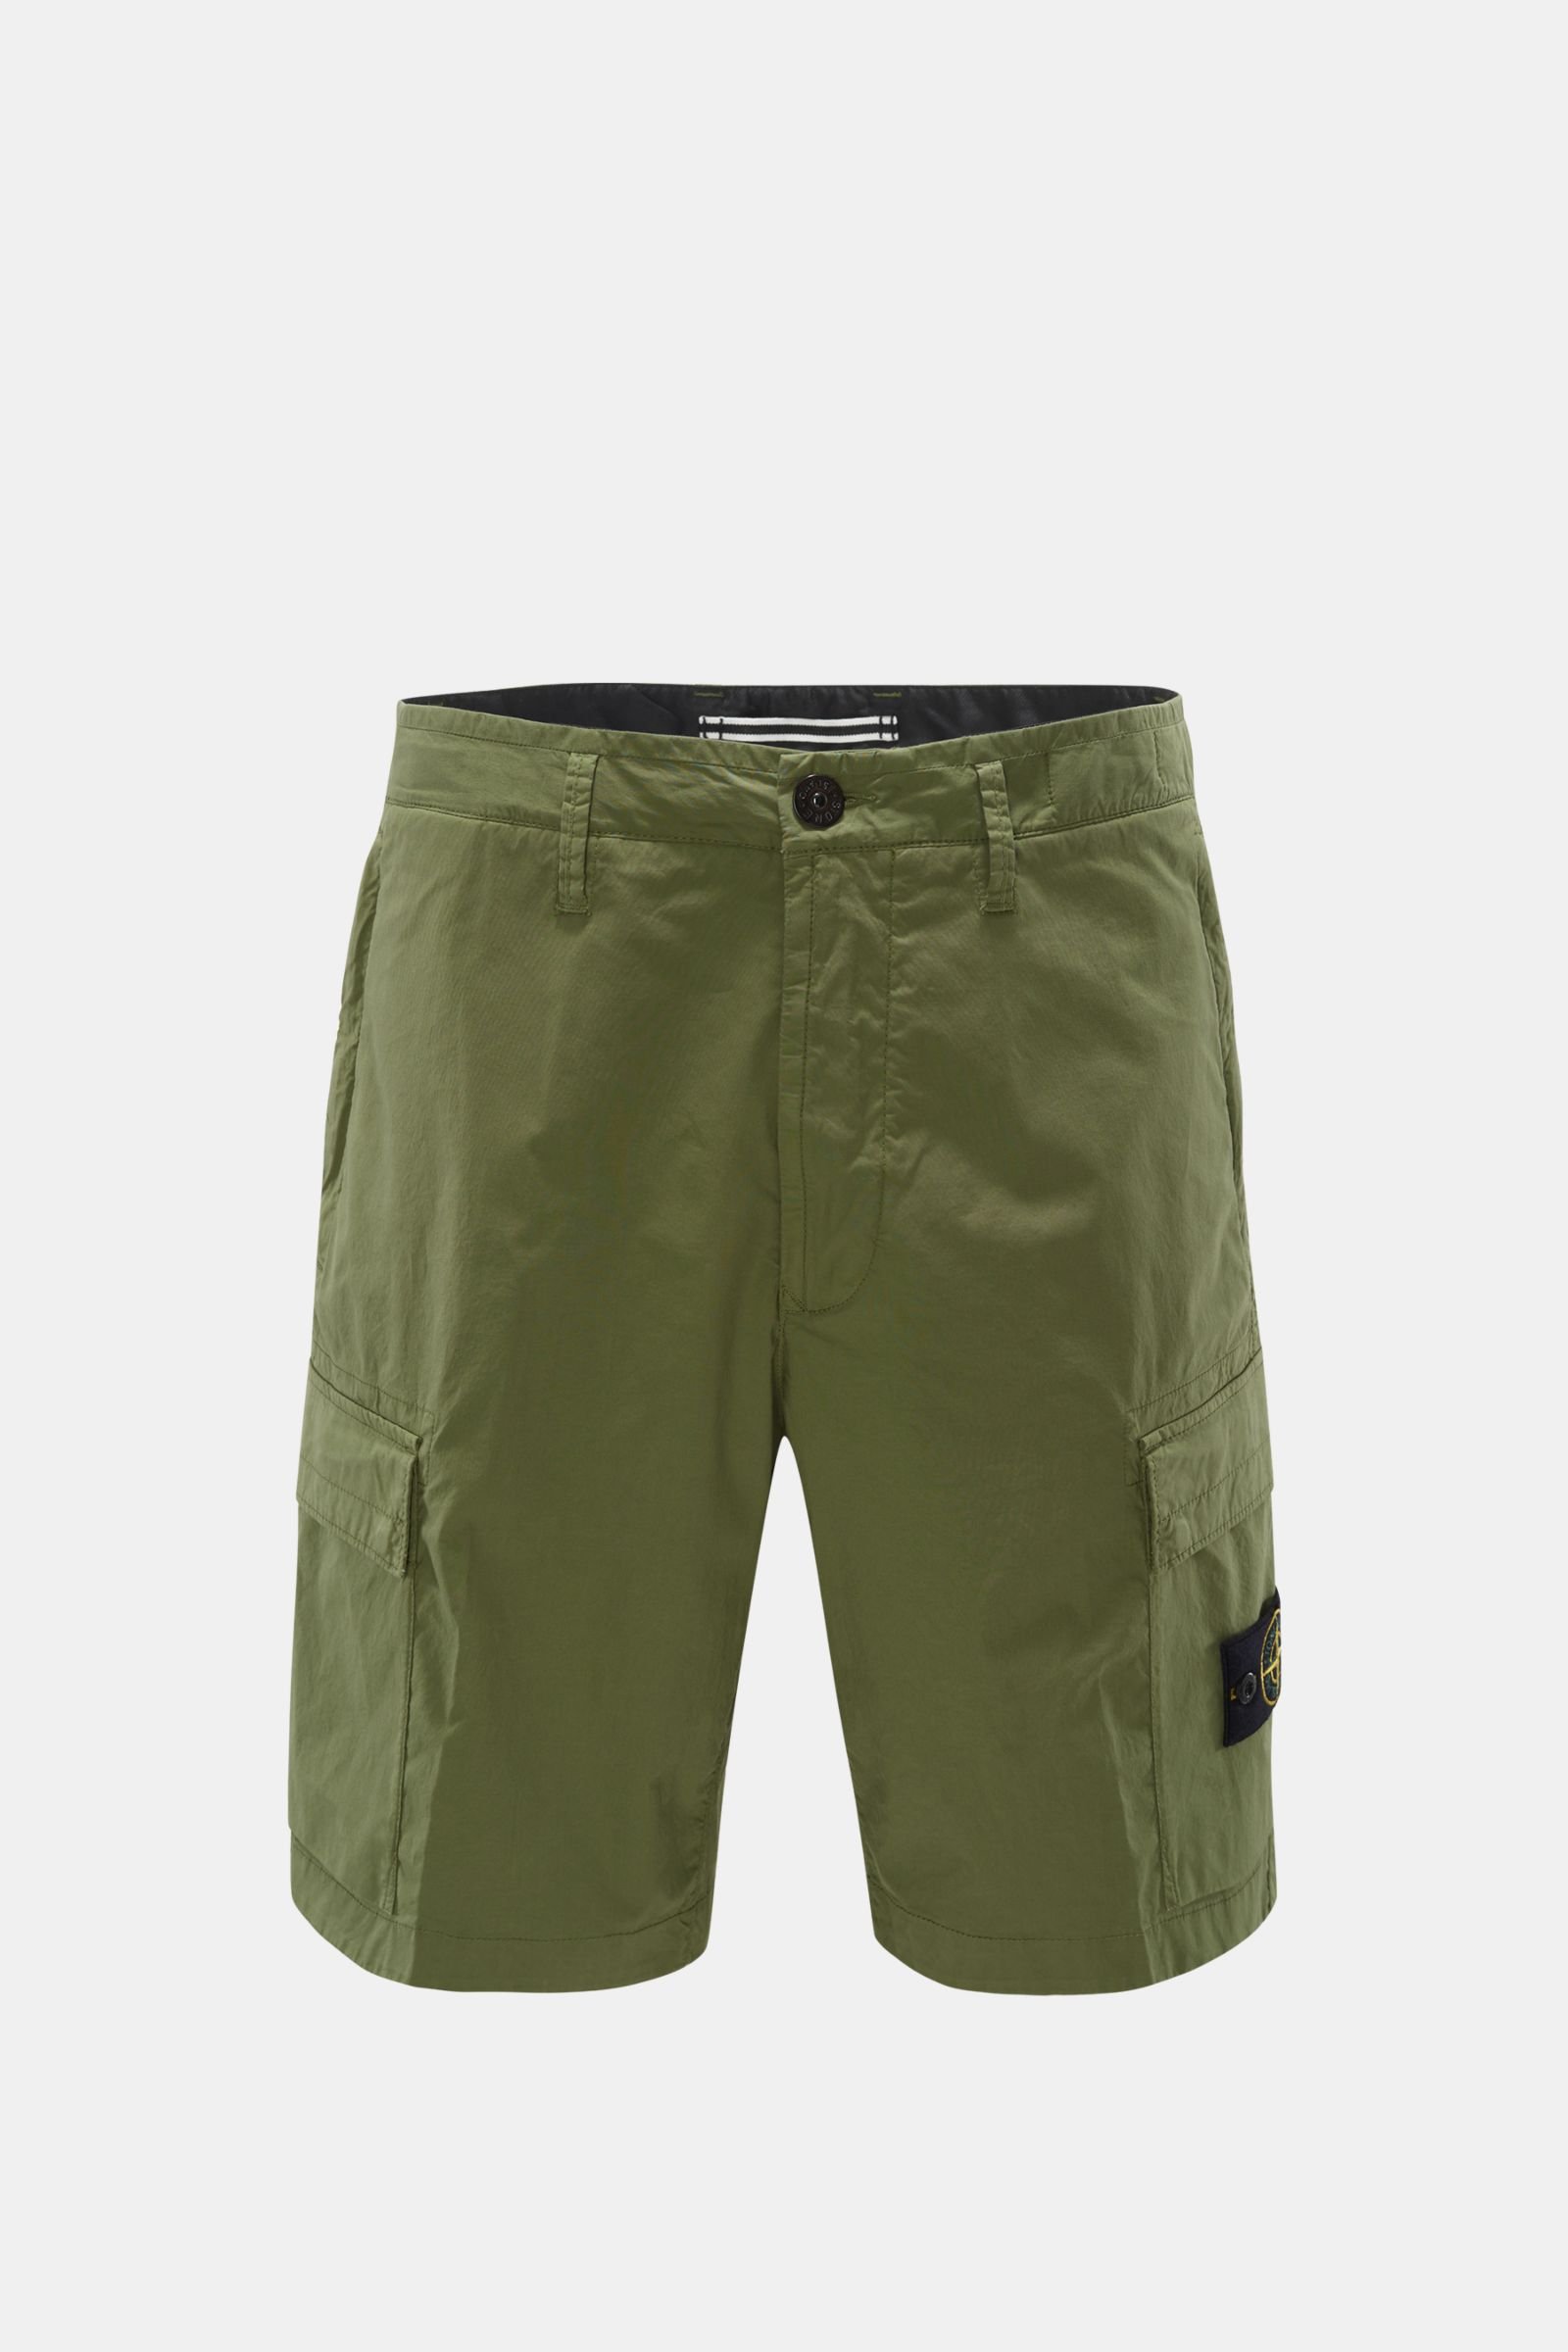 Cargo shorts olive